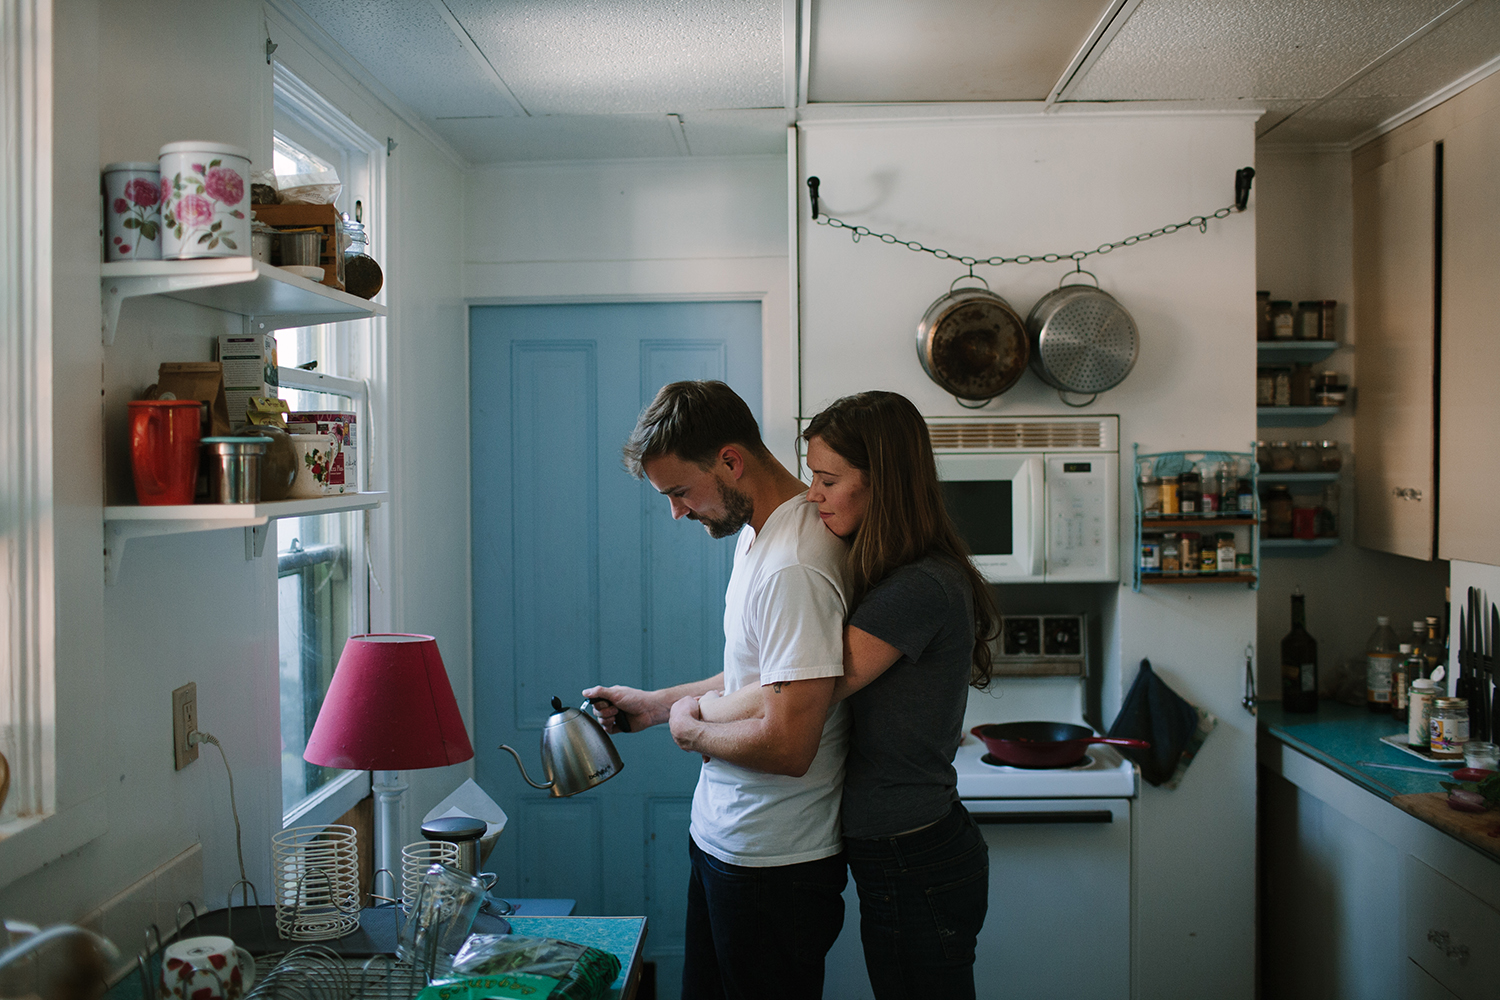 Жить вместе новости. Парень и девушка в квартире. Любовь в квартире. Мужчина и женщина живут вместе. Пара в квартире на кухне.